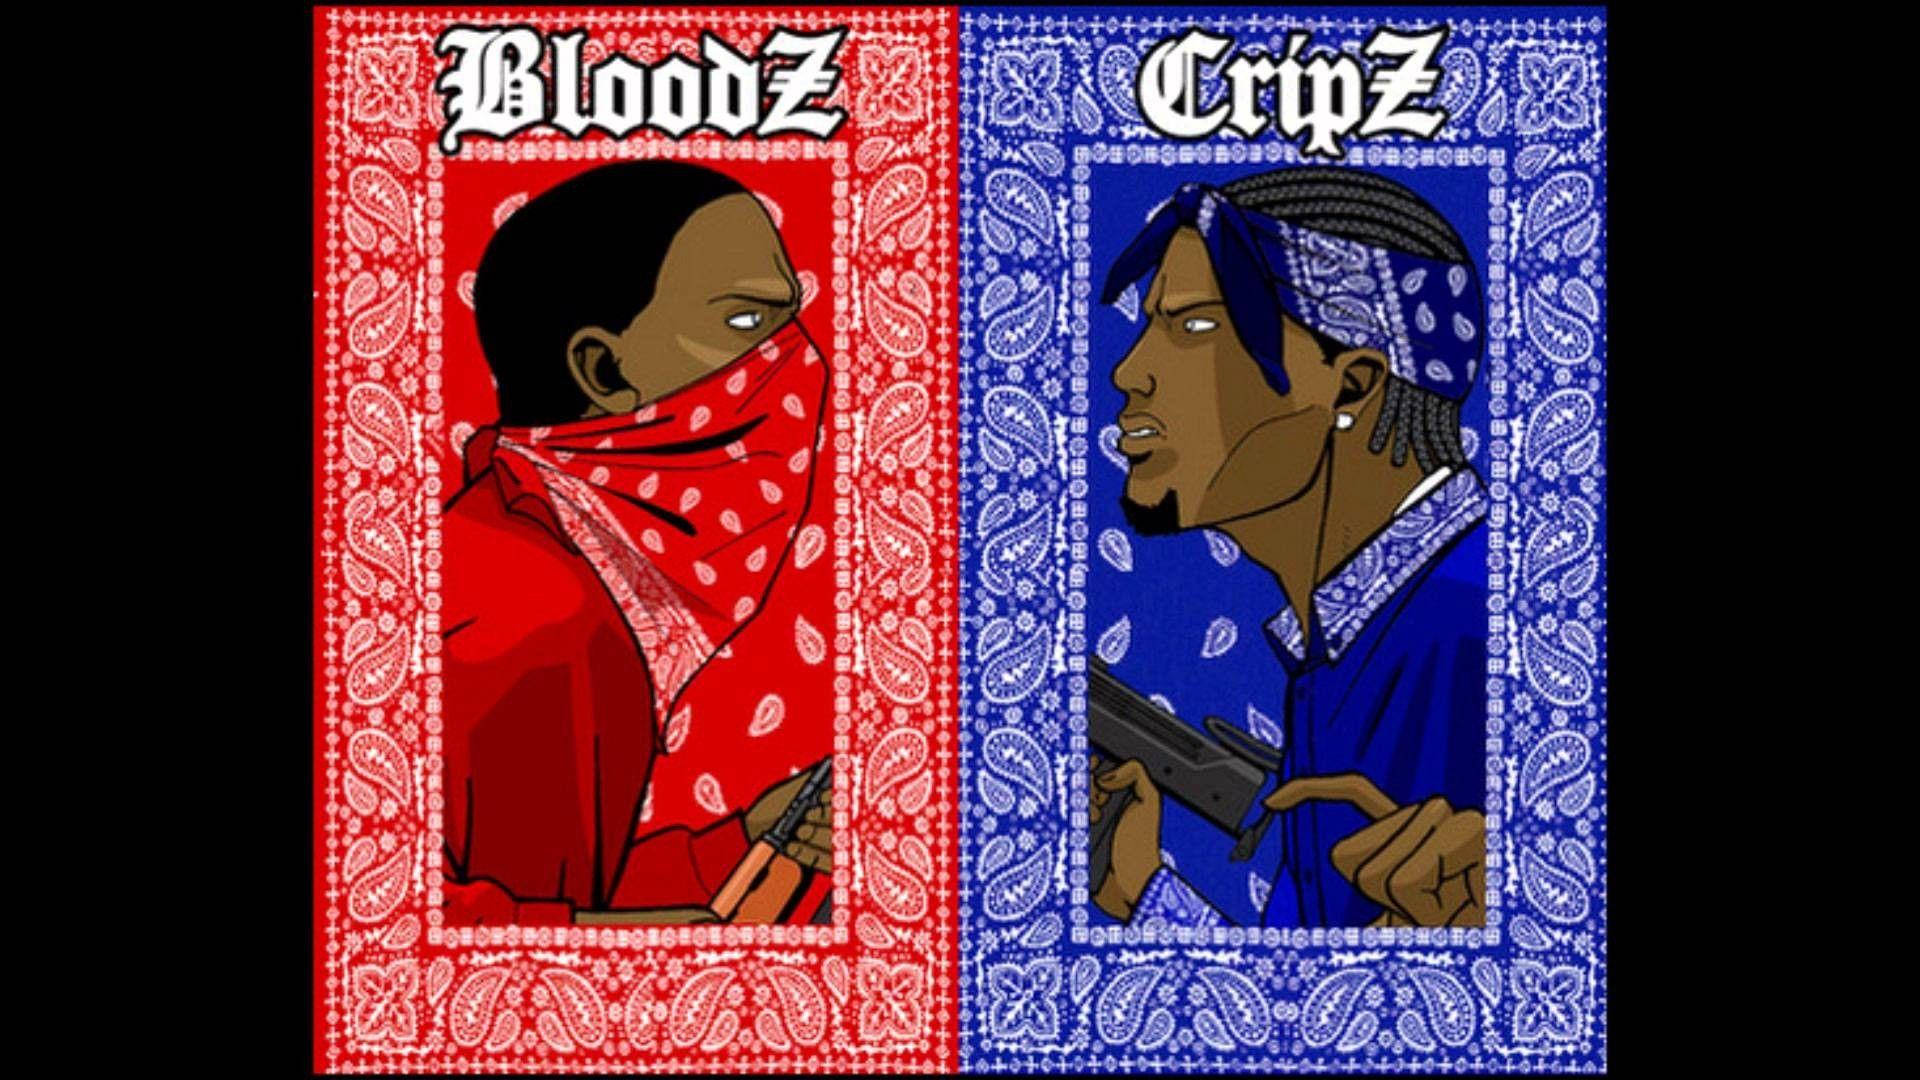 Crip And Bloodz Rival Gang